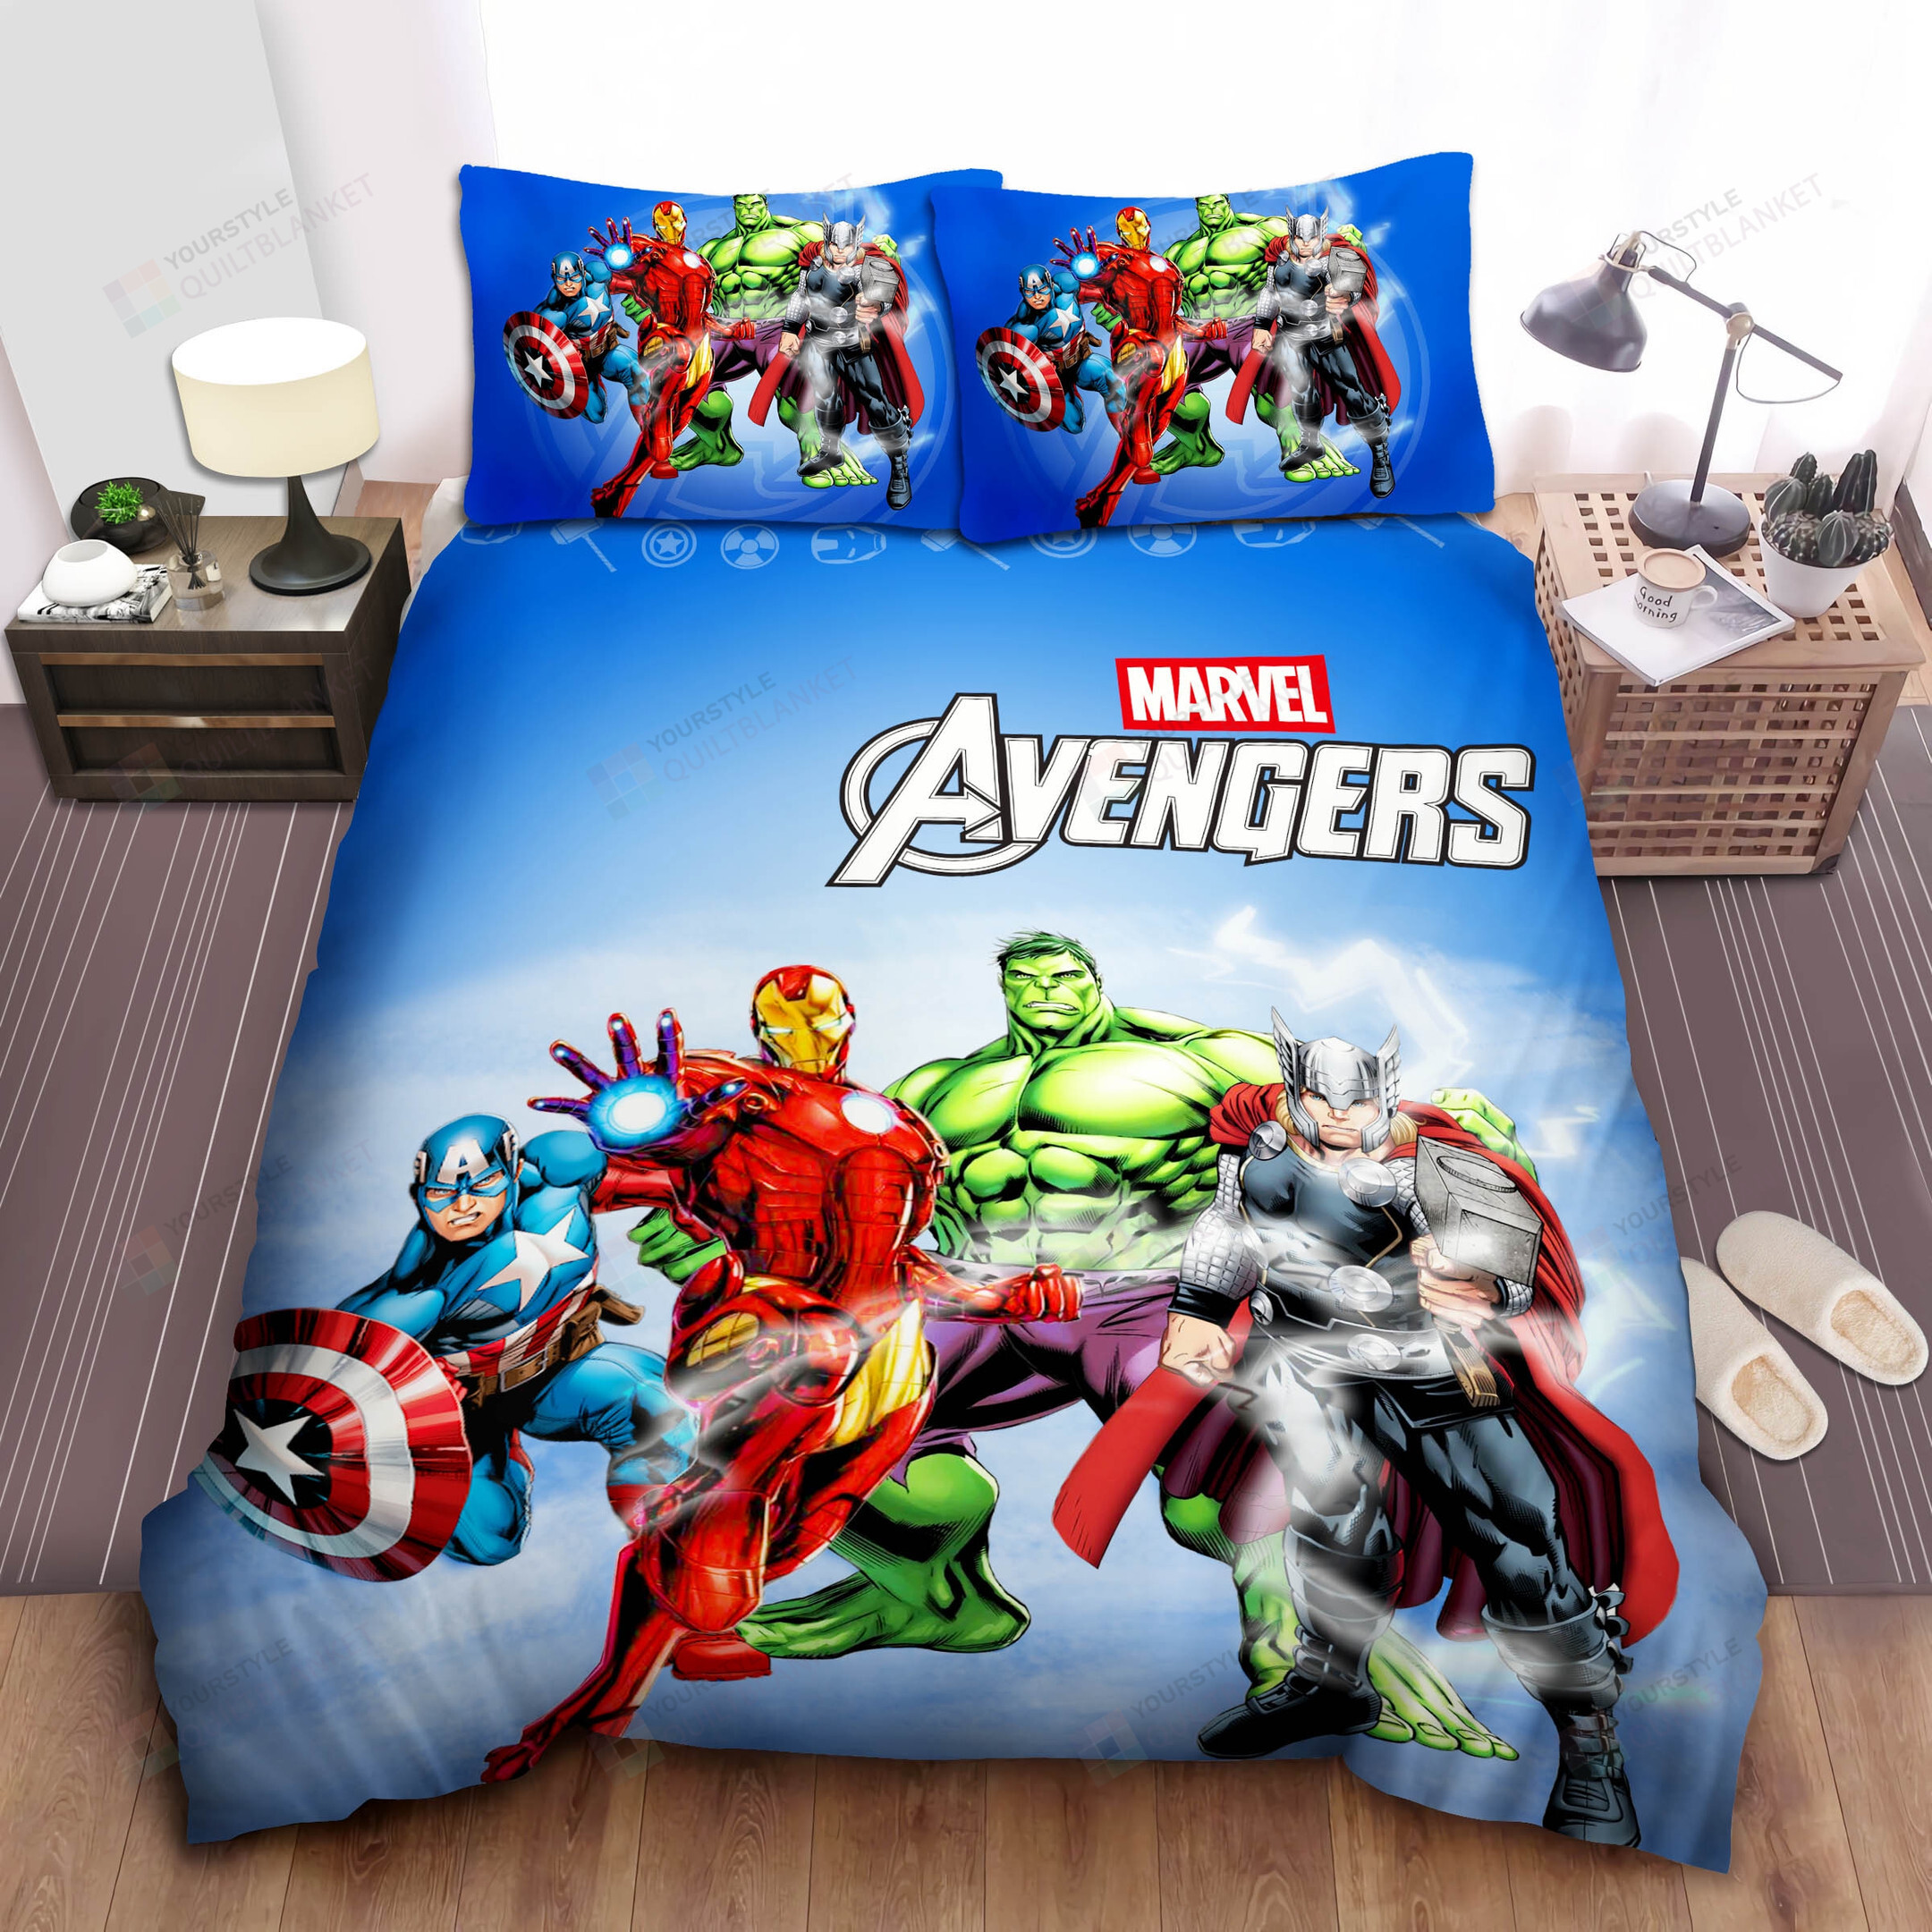 Marvel Avengers Quilt Bed Set